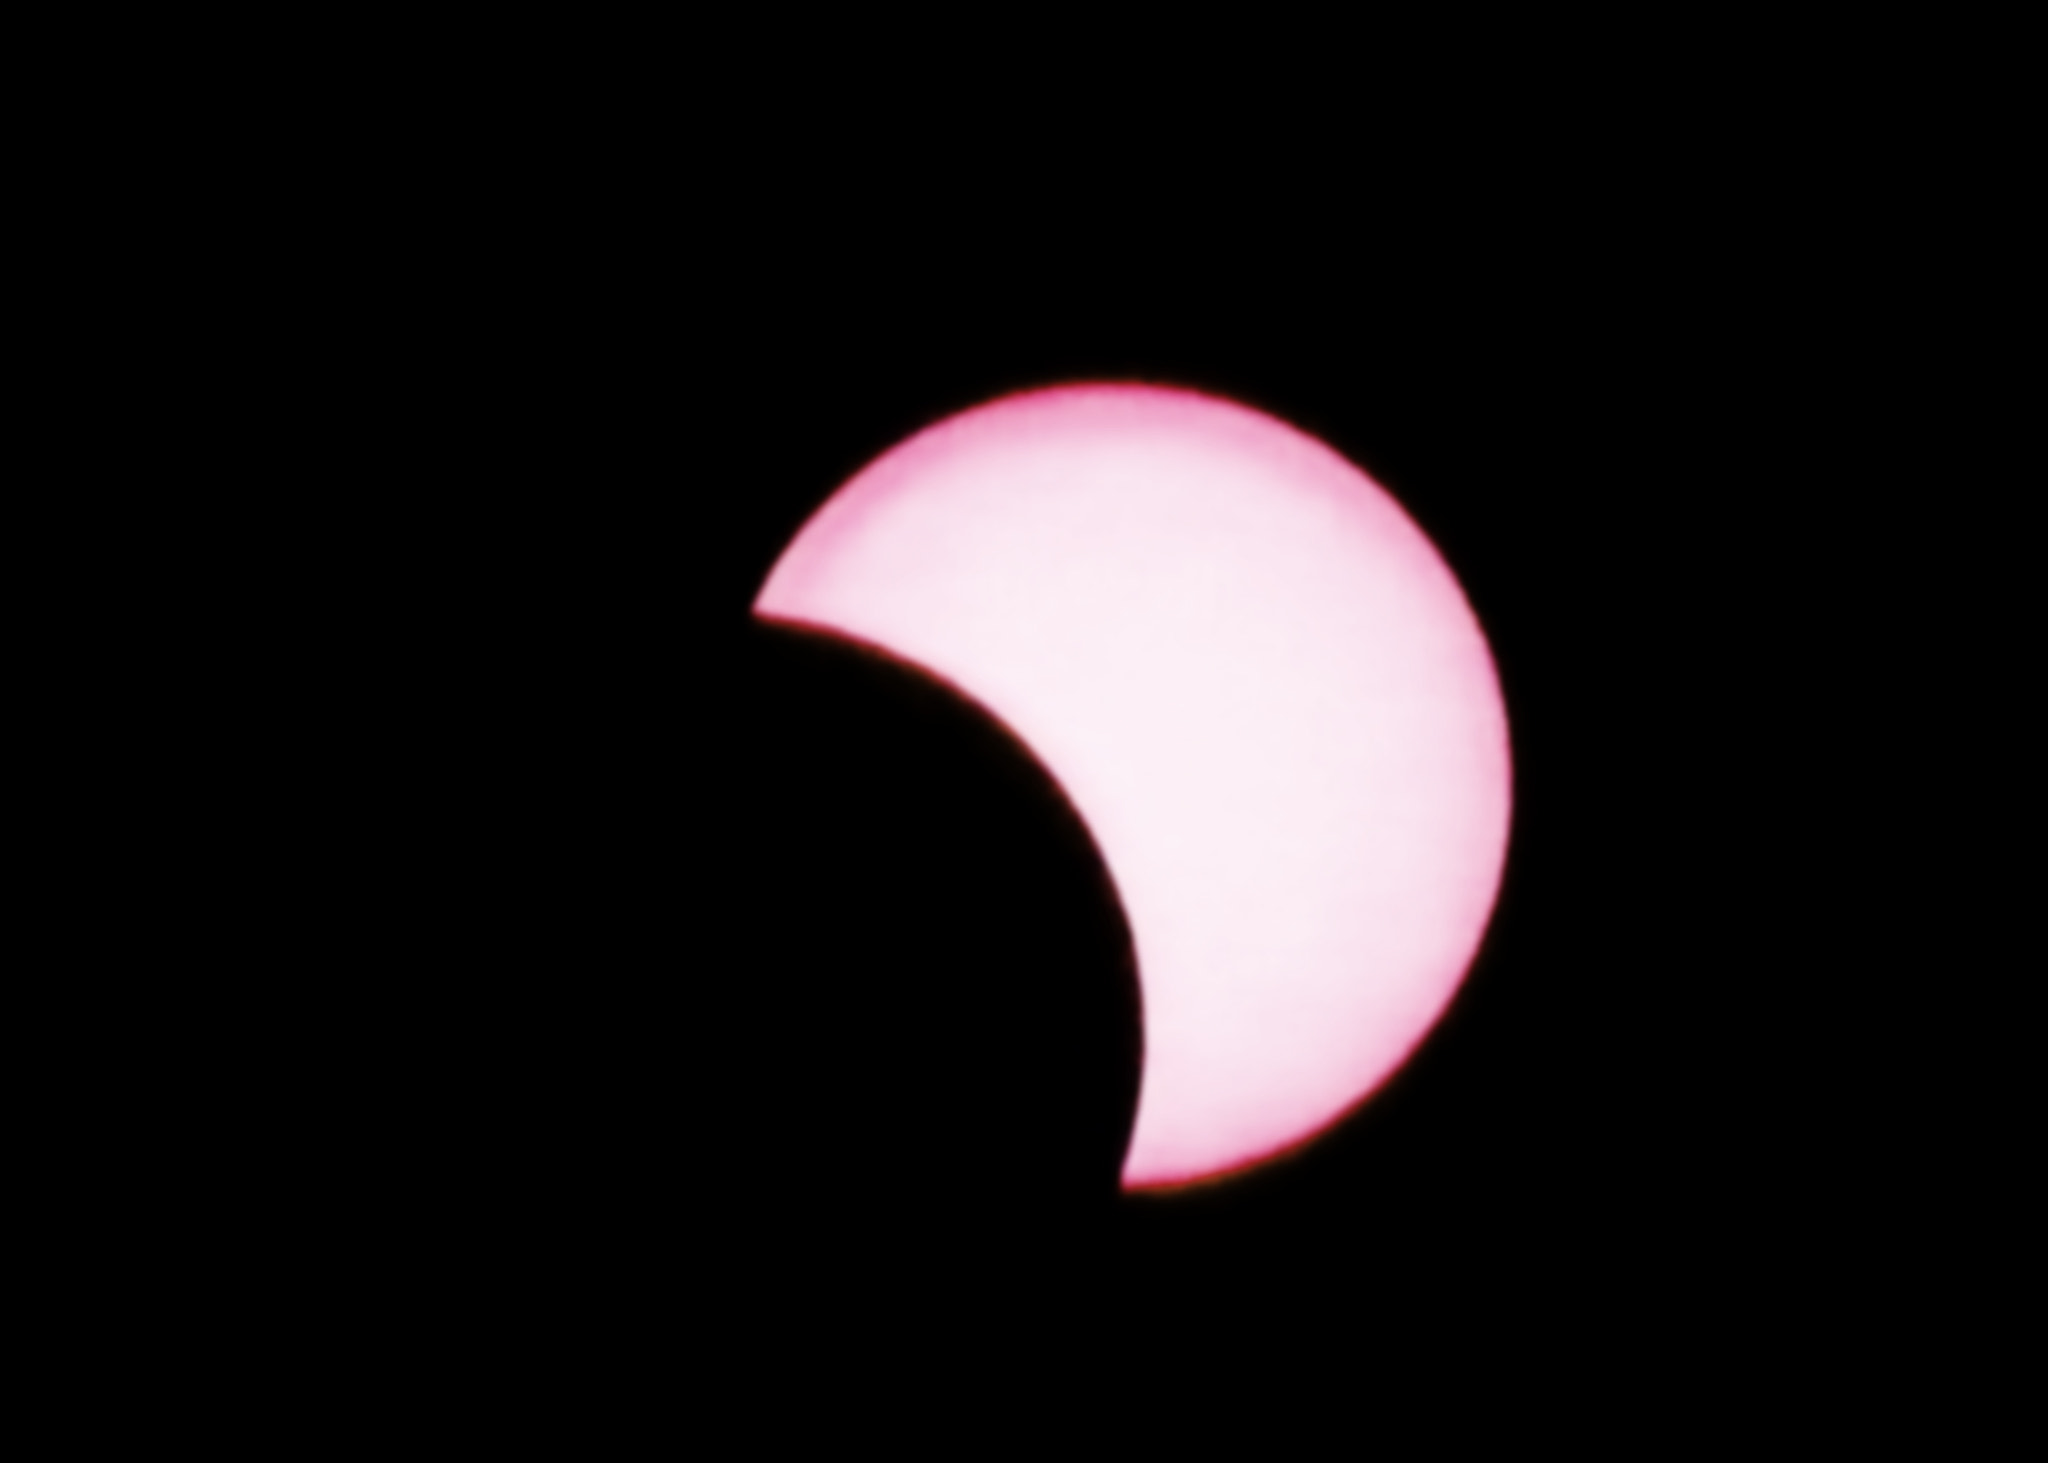 Fujifilm FinePix S5700 S700 sample photo. Eclipse parcial de sol concepción 11 octubre de 2010 photography